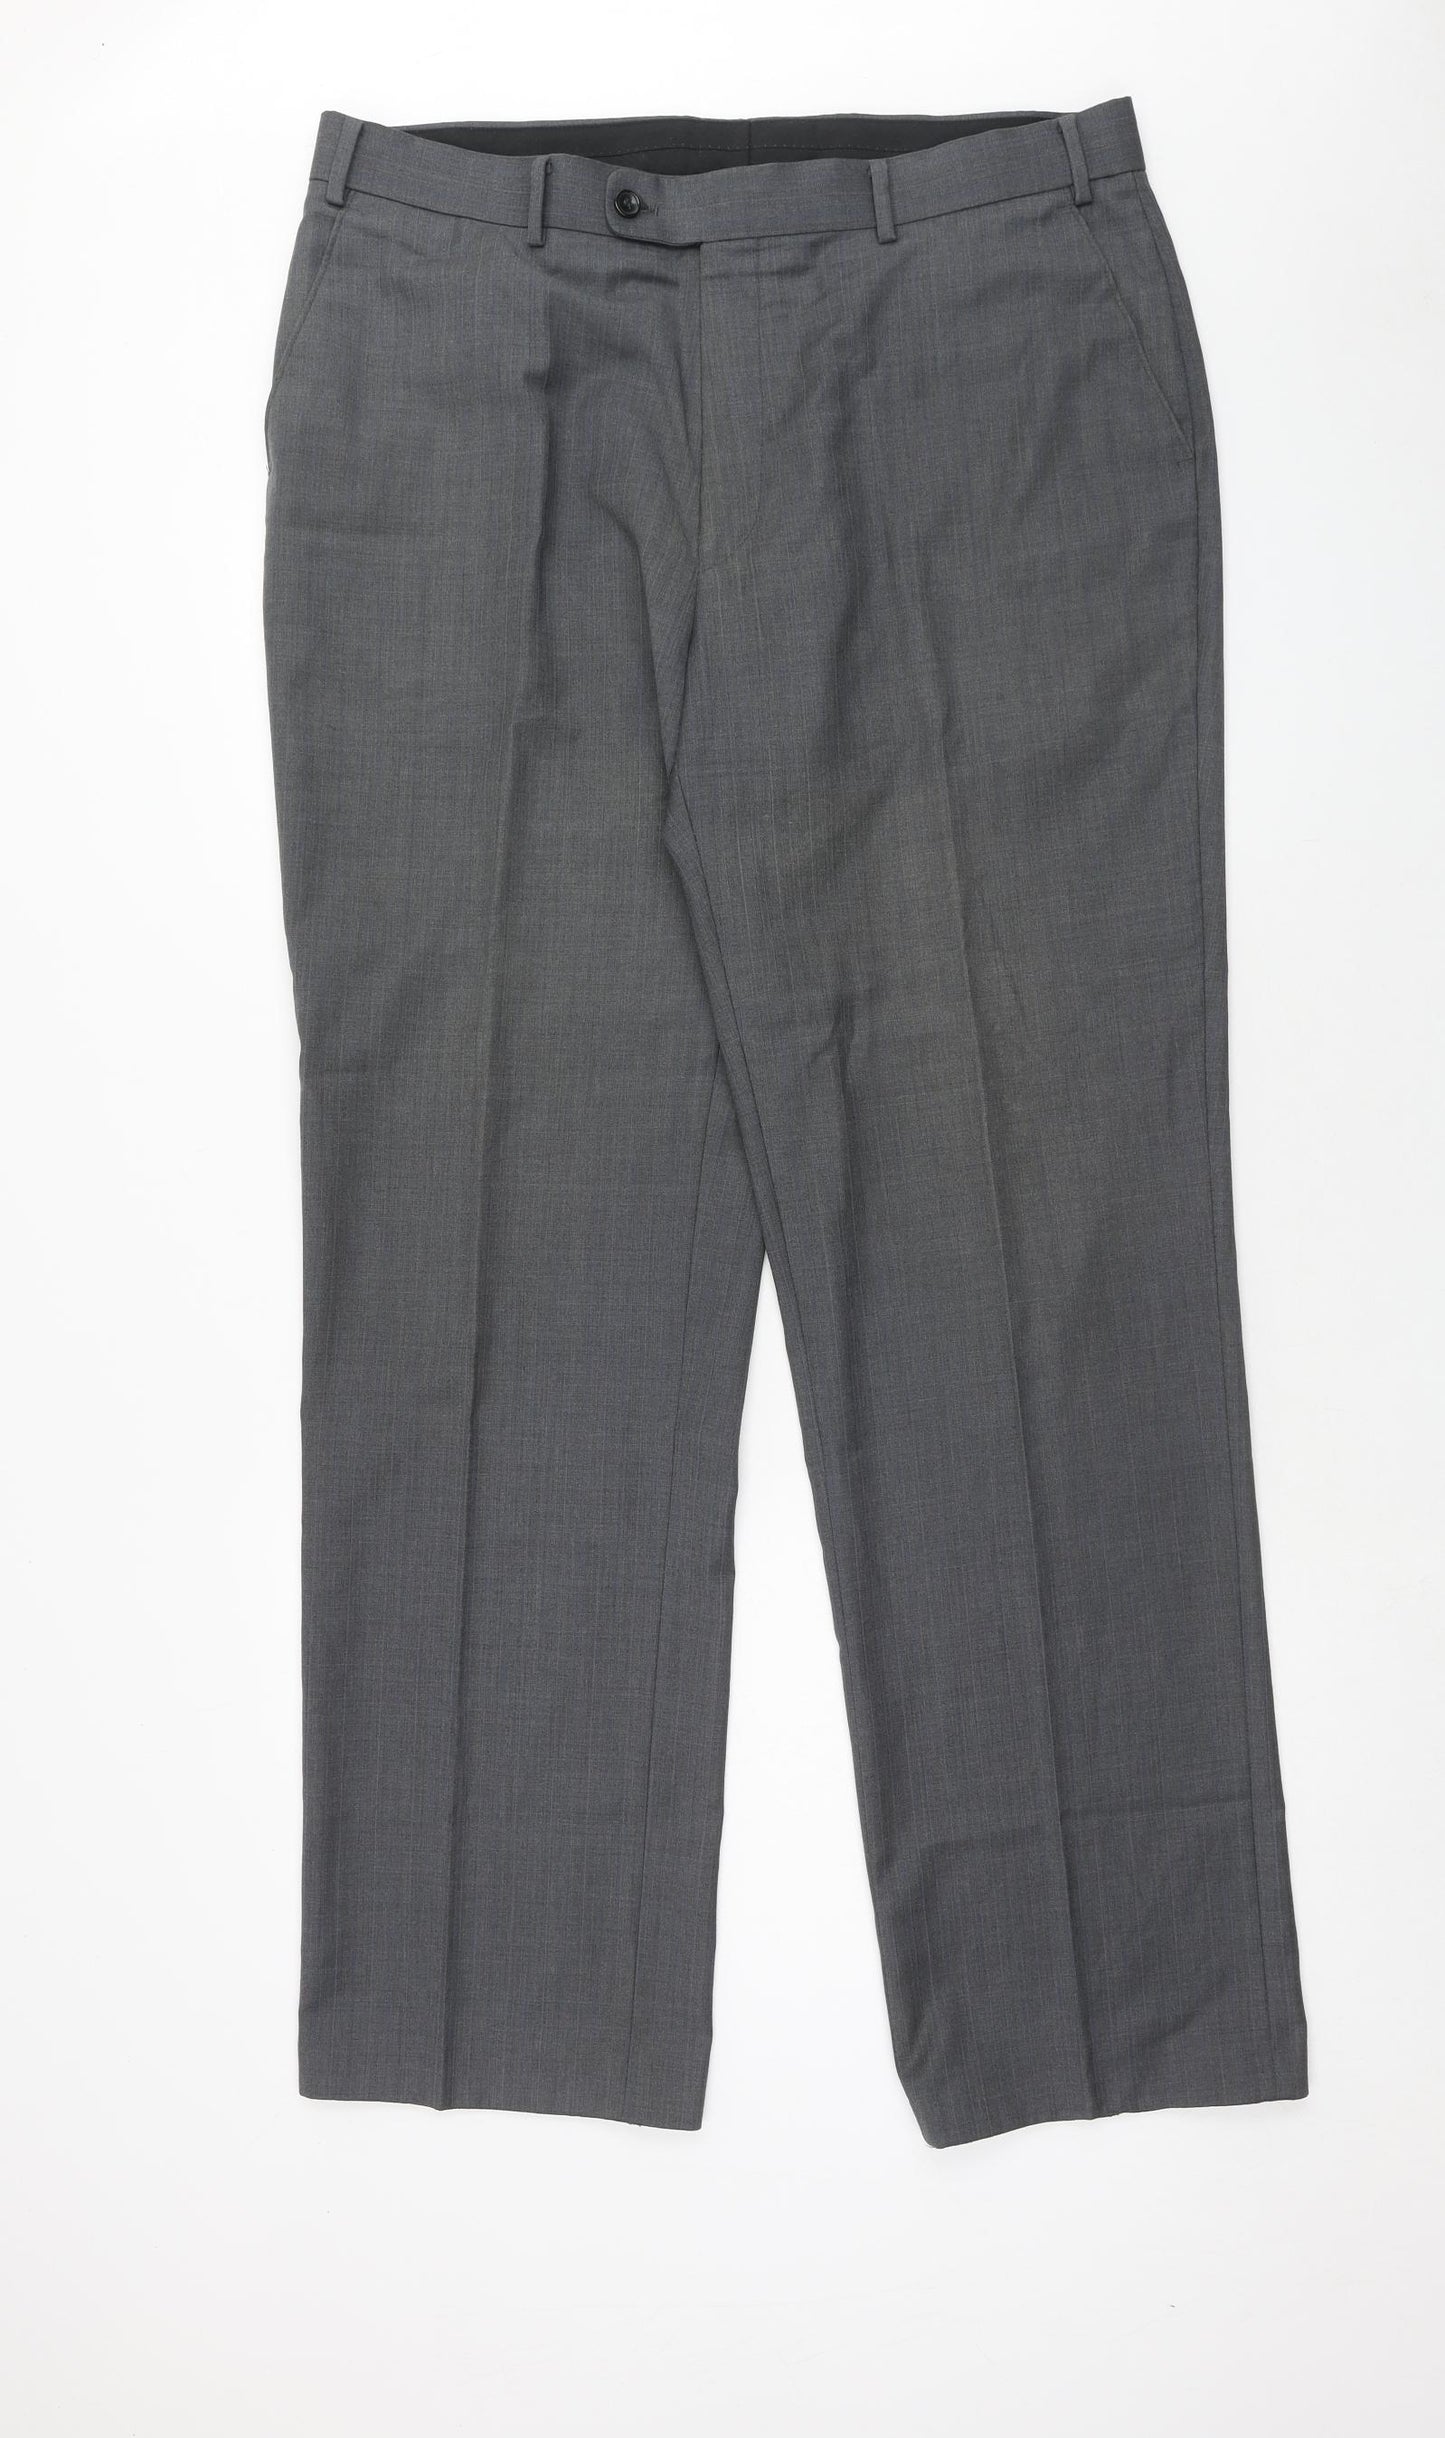 Full Circle Mens Grey Wool Trousers Size 44 in Regular Zip